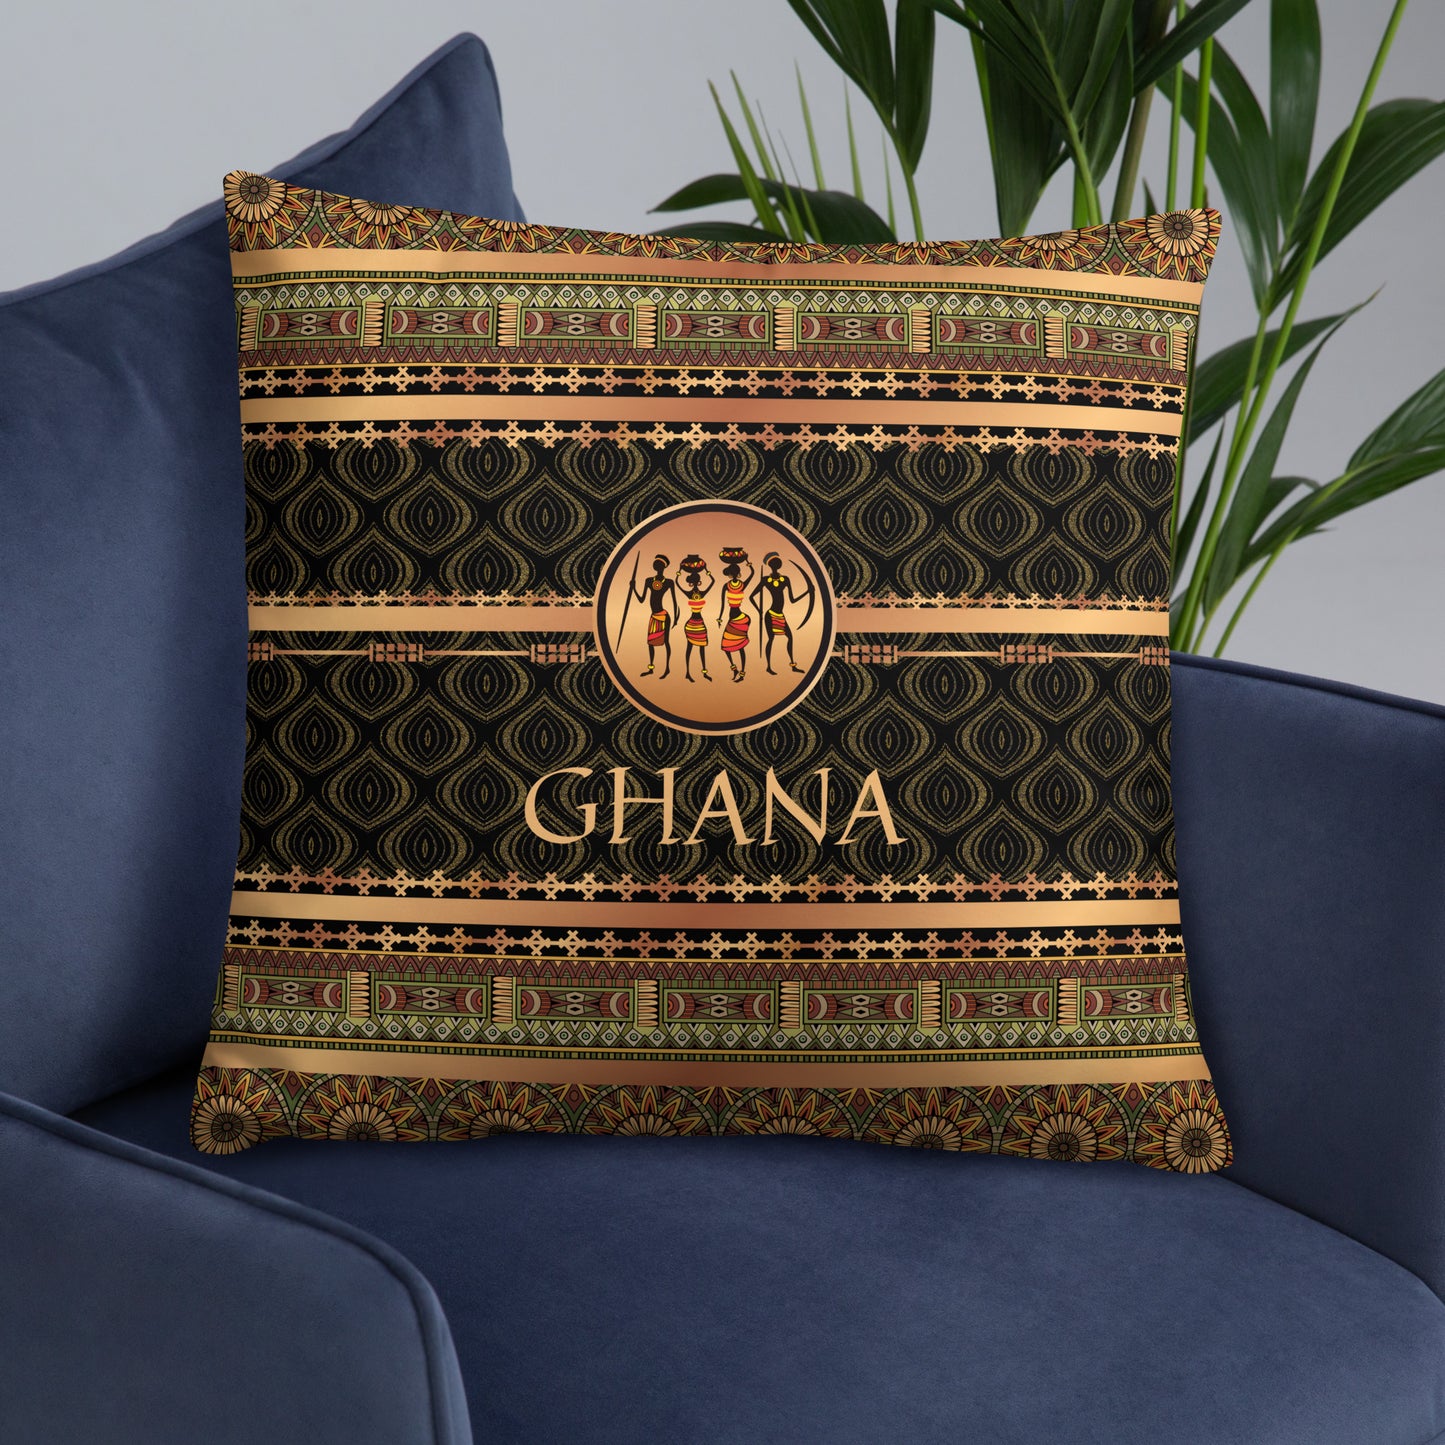 Ghana Travel Gift | Ghana Vacation Gift | Ghana Travel Souvenir | Ghana Vacation Memento | Ghana Home Décor | Keepsake Souvenir Gift | Travel Vacation Gift | World Travel Gift Pillow